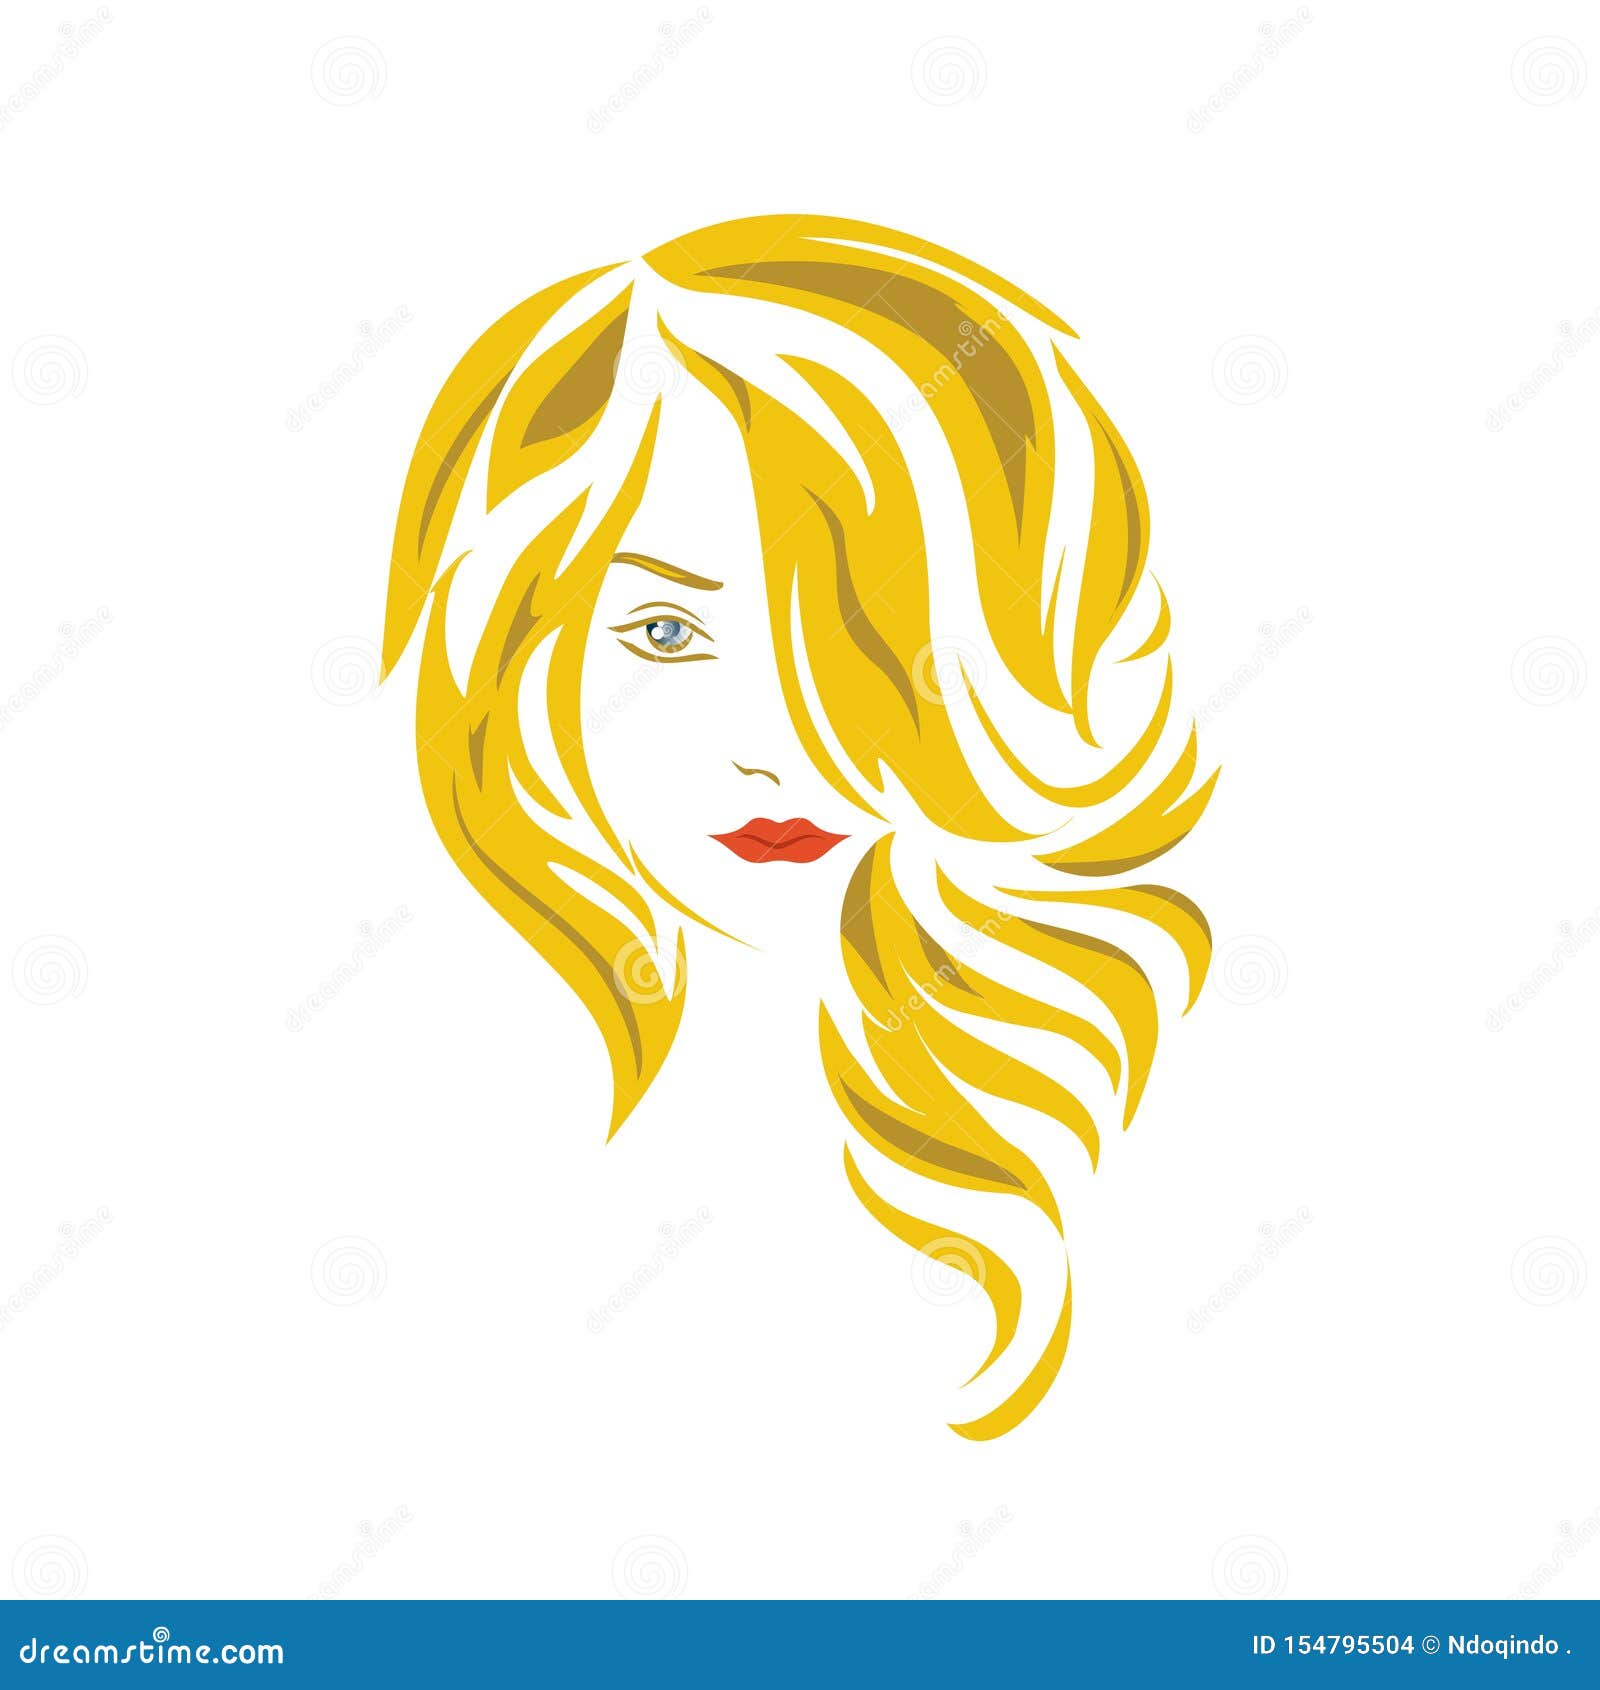 Beauty salon 1080P, 2K, 4K, 5K HD wallpapers free download | Wallpaper Flare